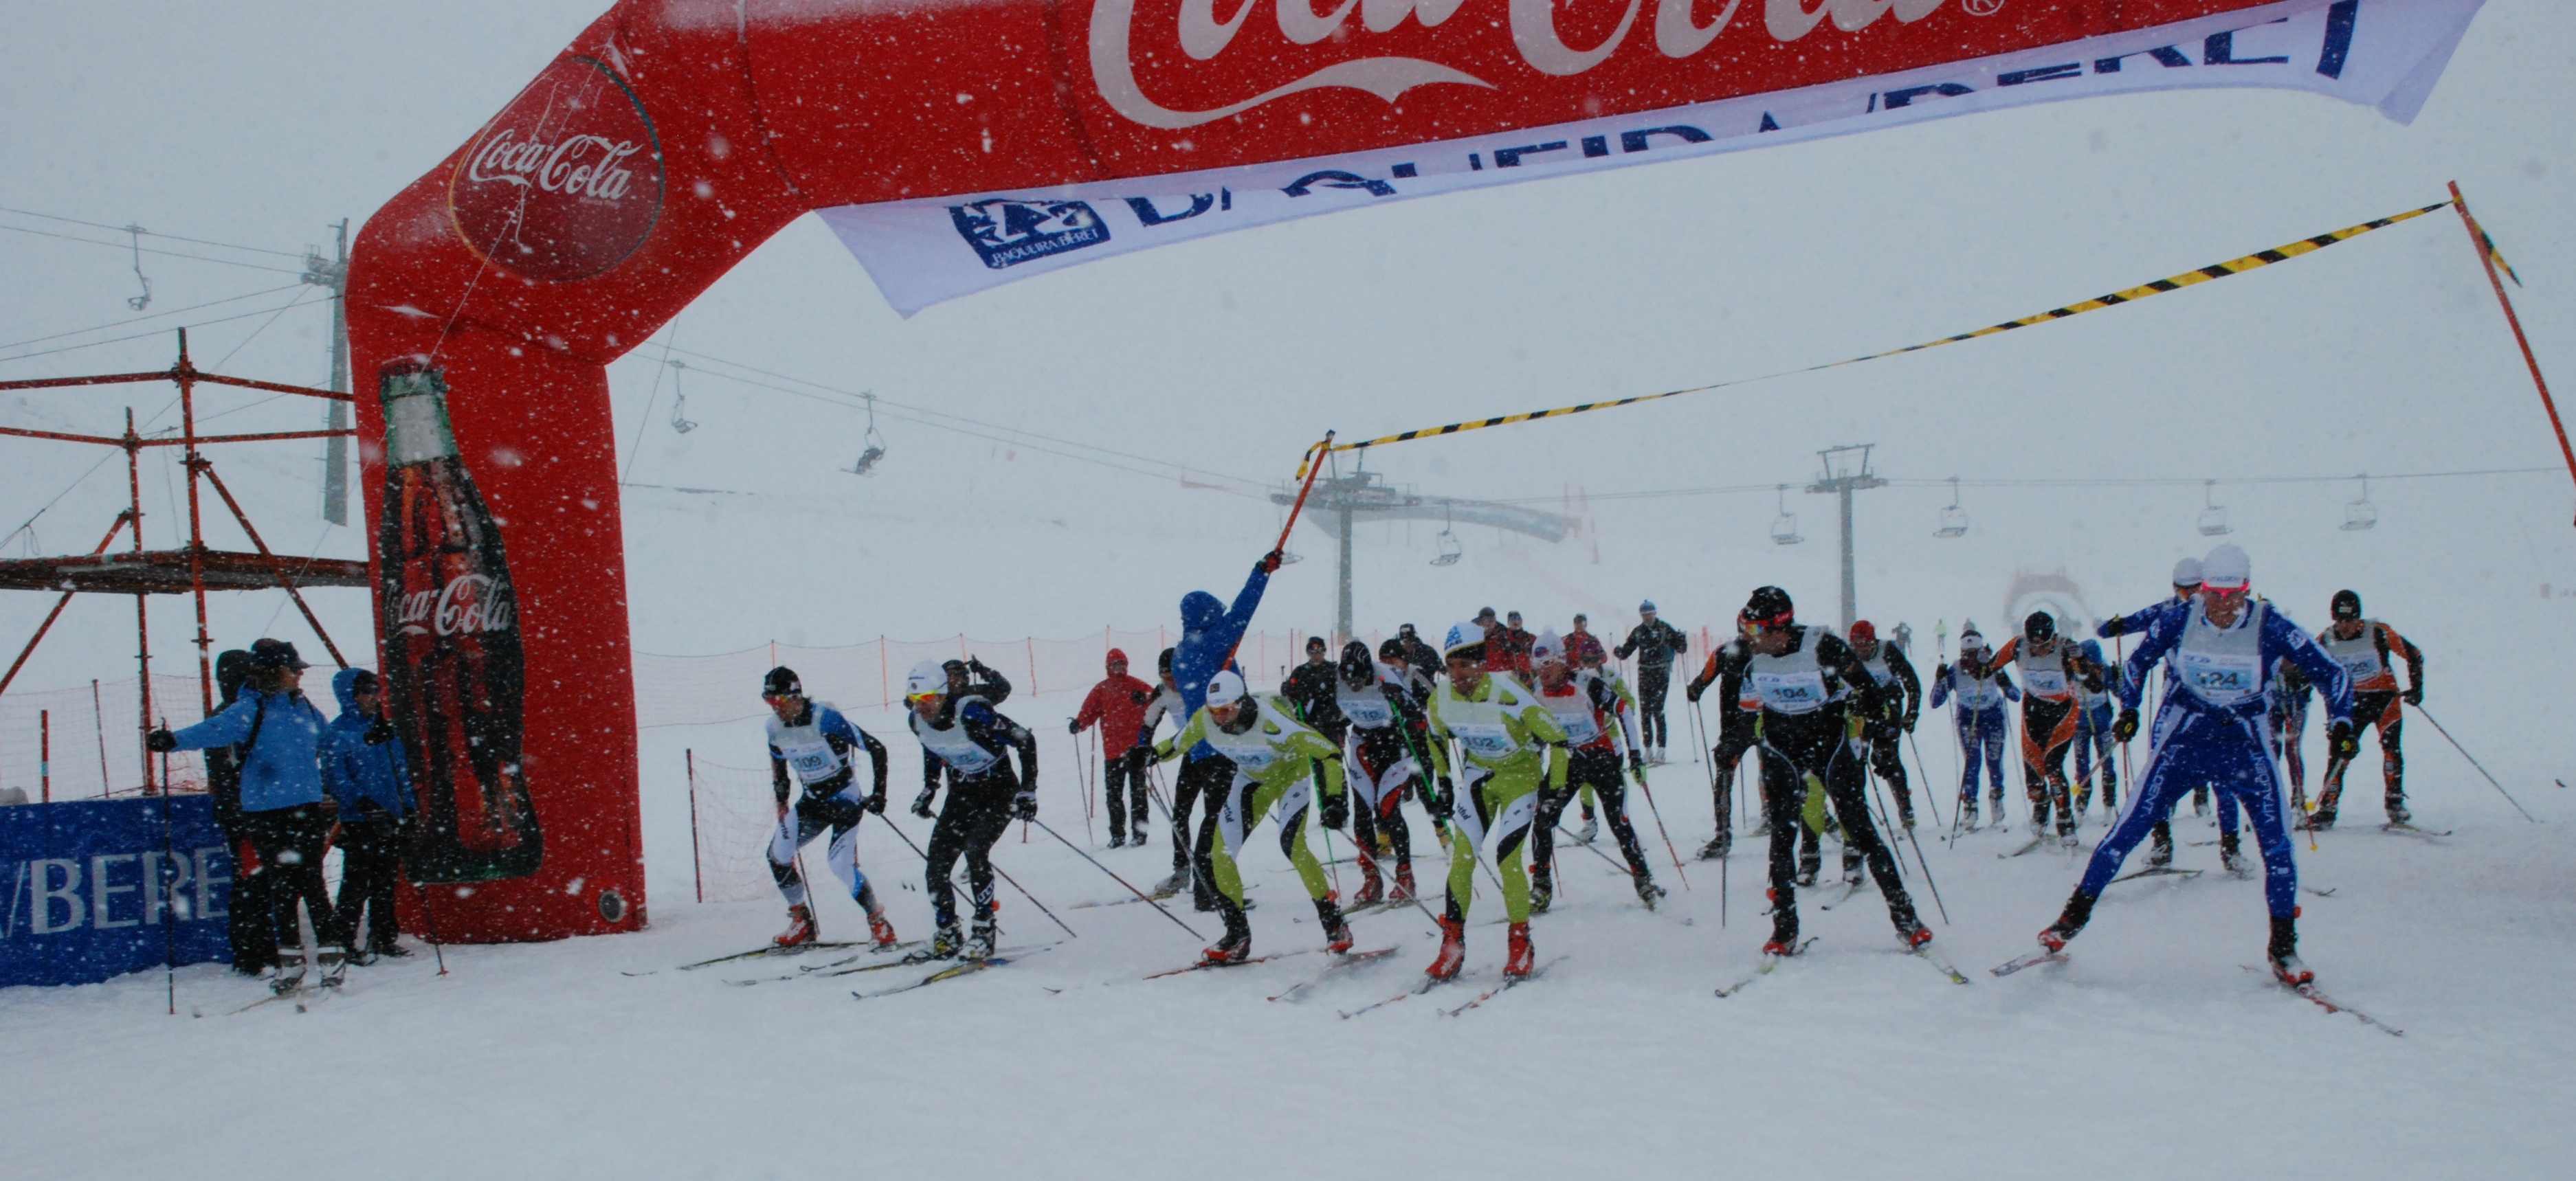 La 36 Edición de la Marxa Beret cuenta este año con el Campeonato de España de larga distancia Marxa Beret - Carrera esquí nórdico